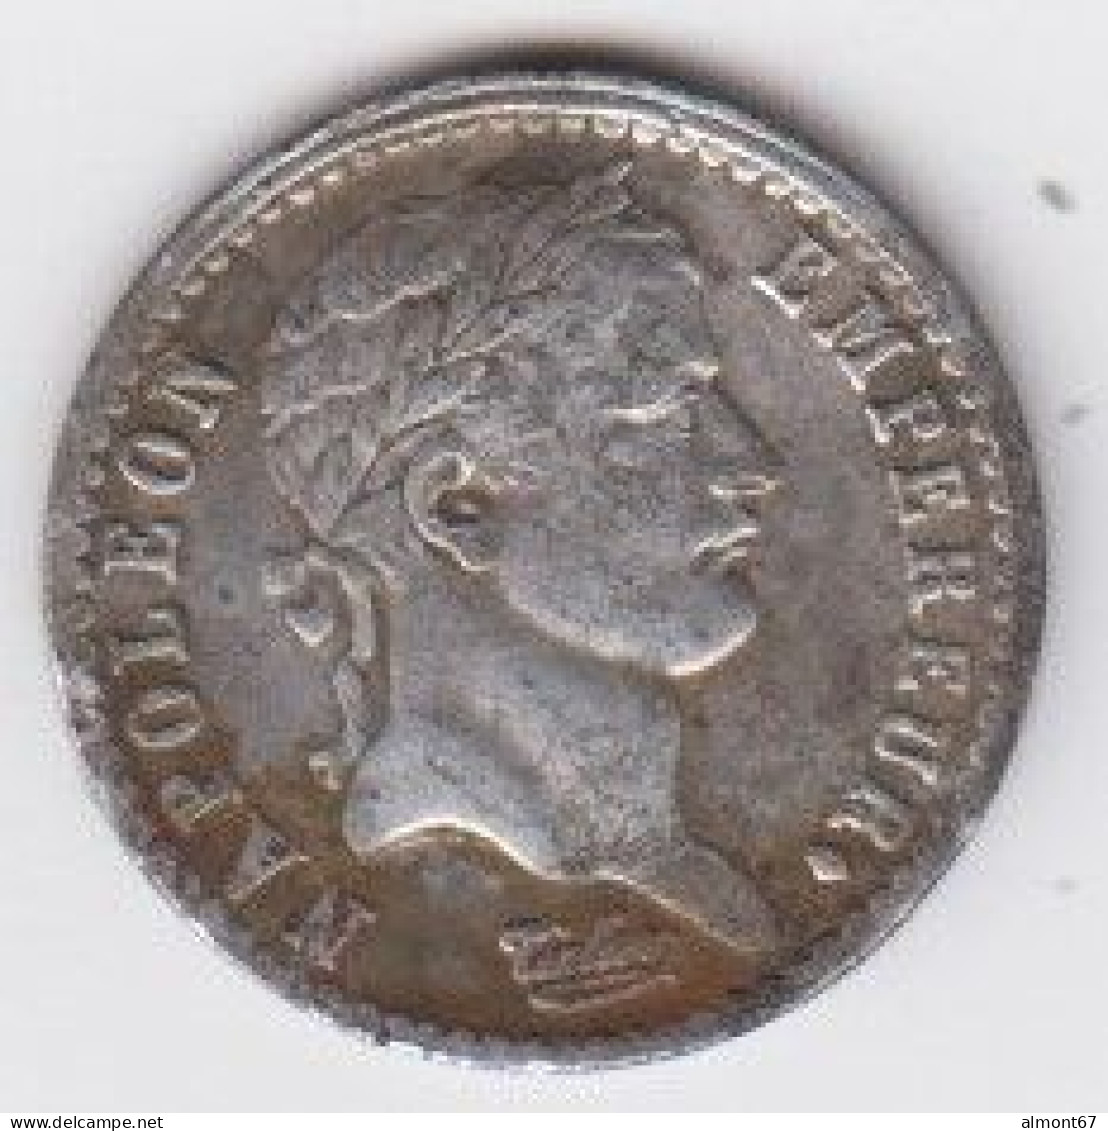 Napoléon - Demi Franc 1811 M - 1/2 Franc